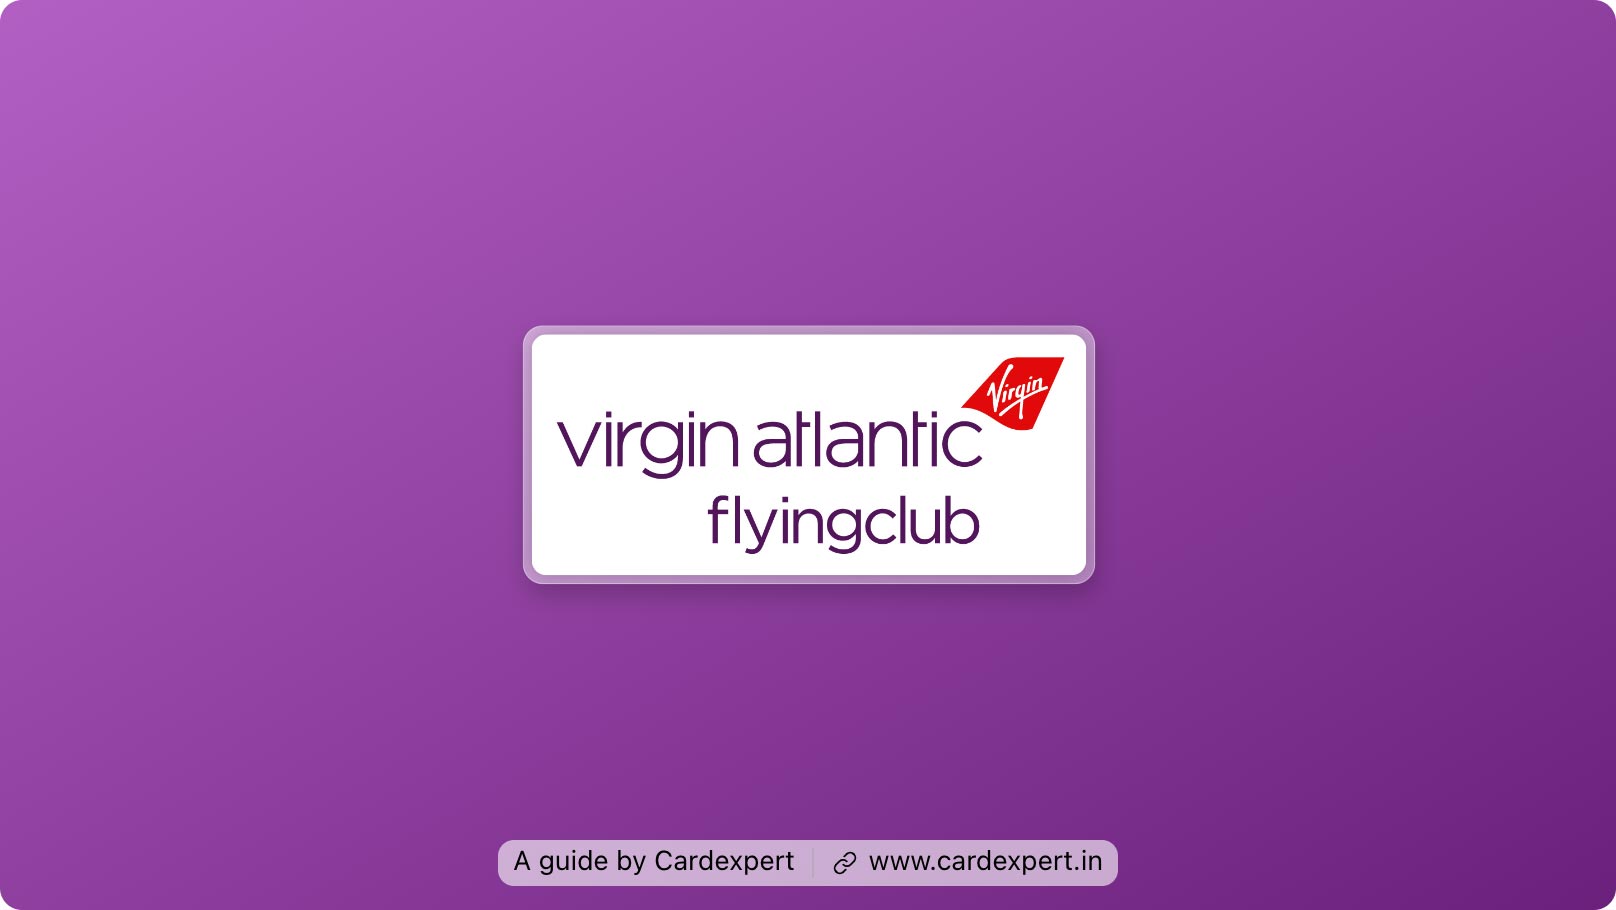 Virgin Atlantic Flying Club Guide